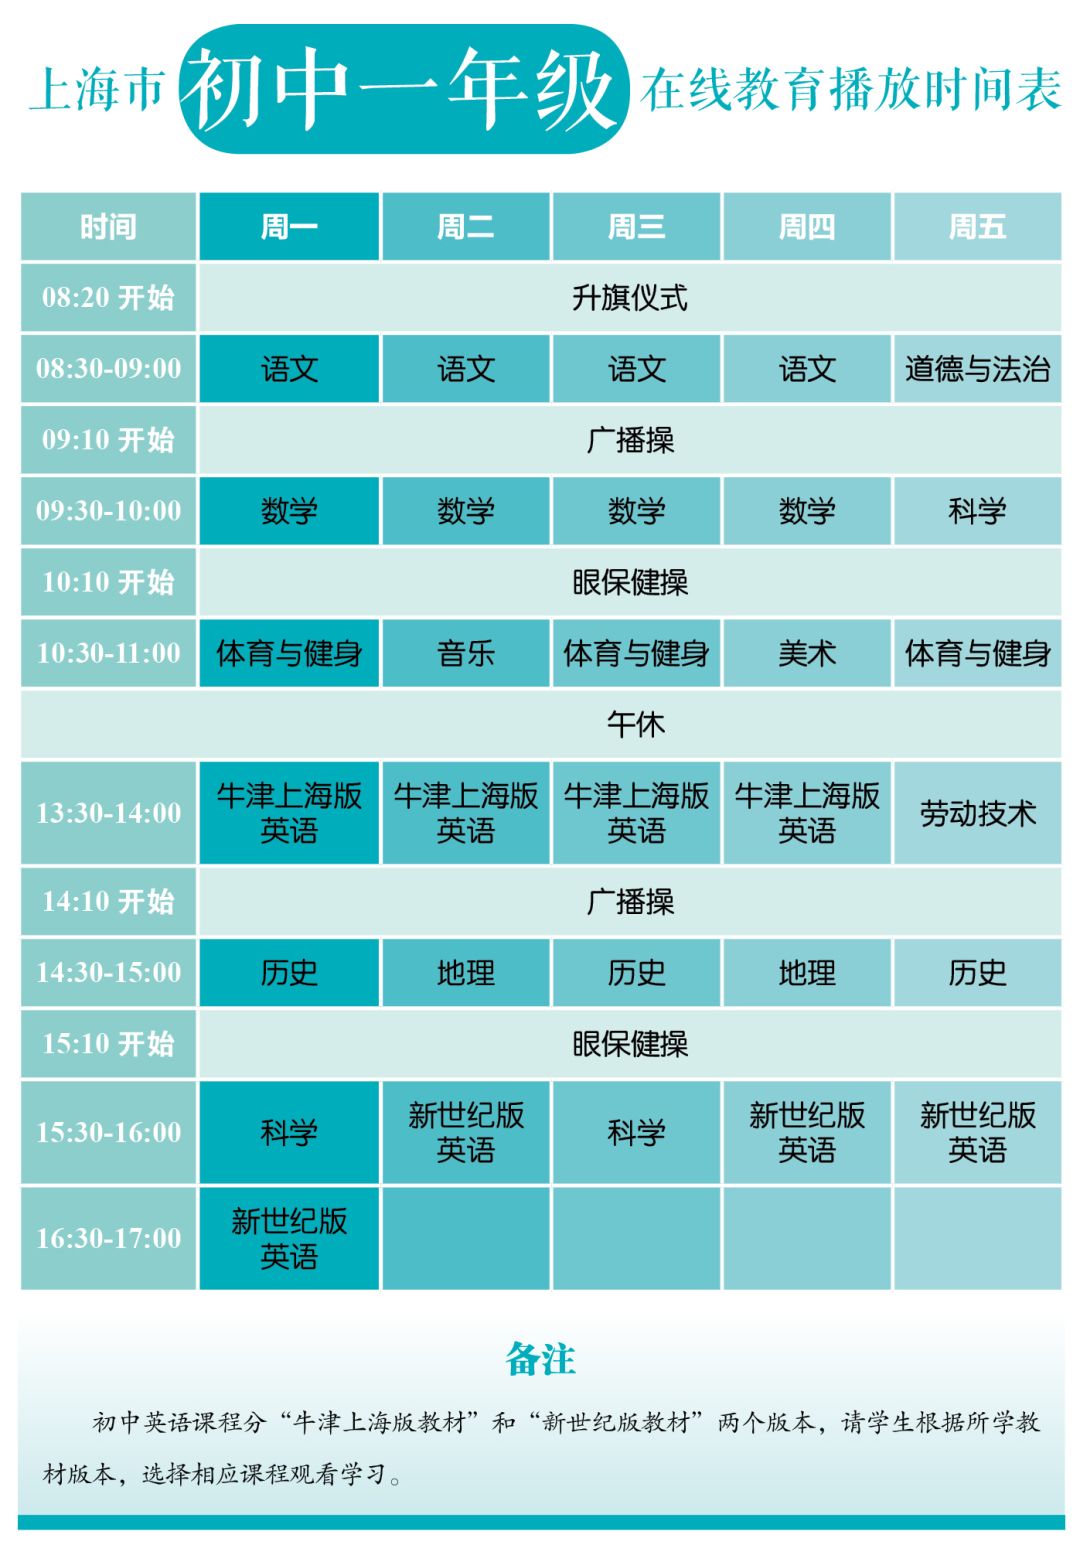 刚刚！上海市教委发布中小学各年级在线教育时间表！3月2日起正式开始！